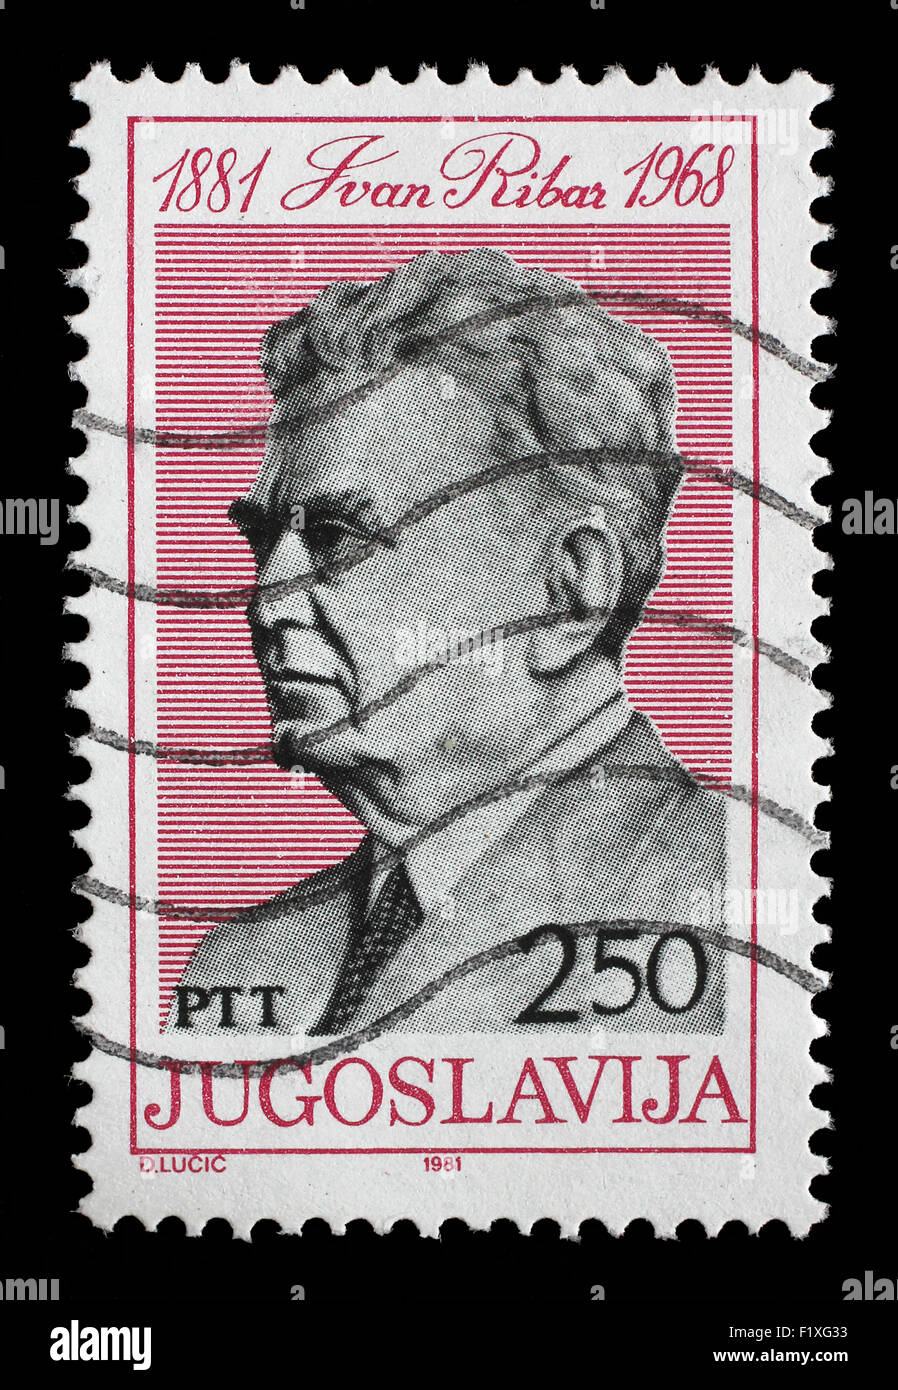 Timbres en Yougoslavie montre Ivan Ribar (21 janvier 1881 - 11 juin 1968) homme politique yougoslave, vers 1981 Banque D'Images